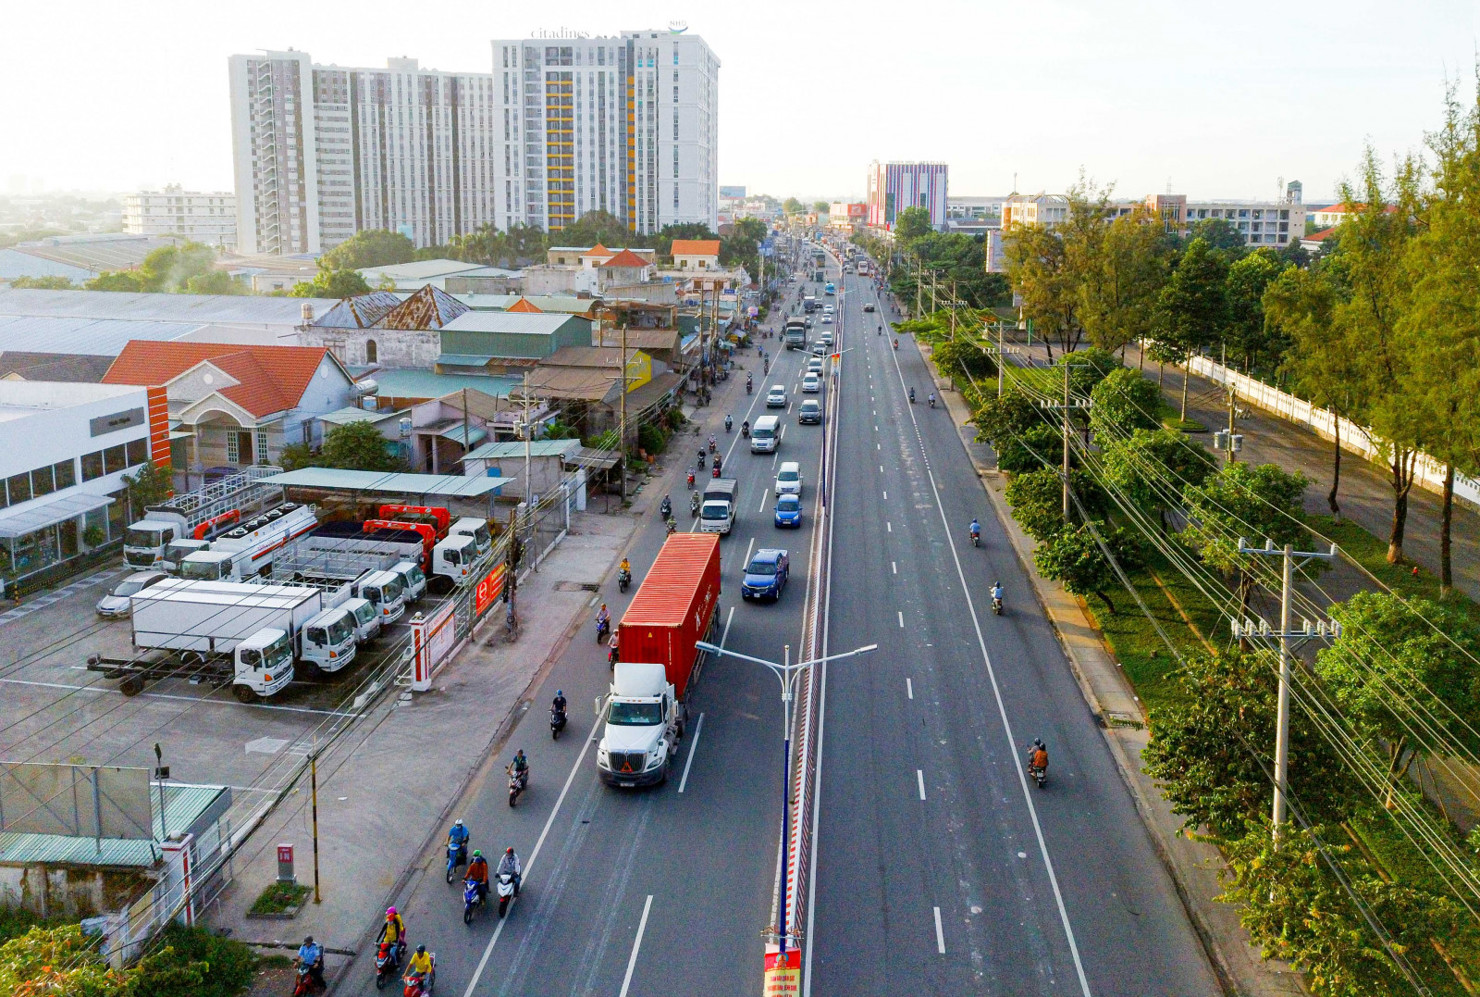 Quốc lộ 13 đoạn qua địa bàn TP. Thuận An sẽ được nâng cấp, mở rộng từ 6 làn xe thành 8 làn xe để đáp ứng nhu cầu giao thông trong giai đoạn mới. Ảnh: QUỐC CHIẾN